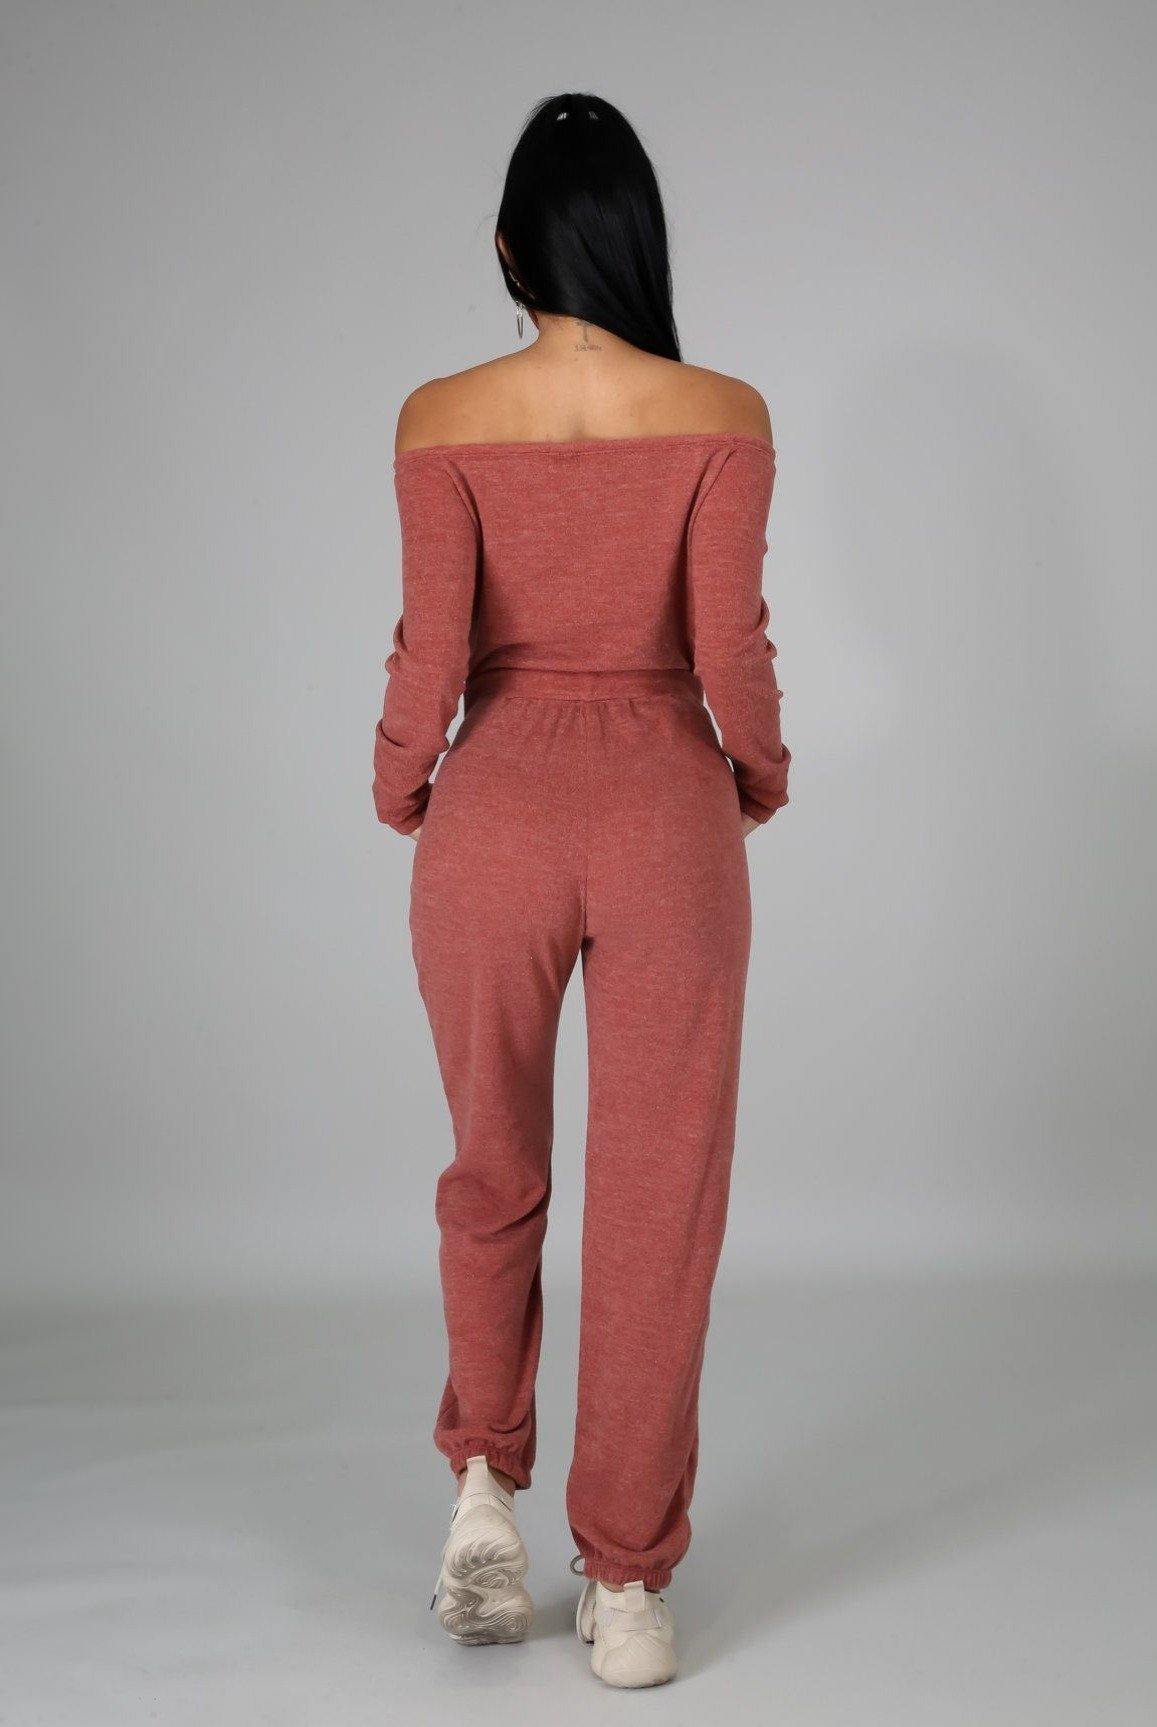 I Got Options....Off Shoulder knit Jumpsuit | Swagg Boutique LLC.